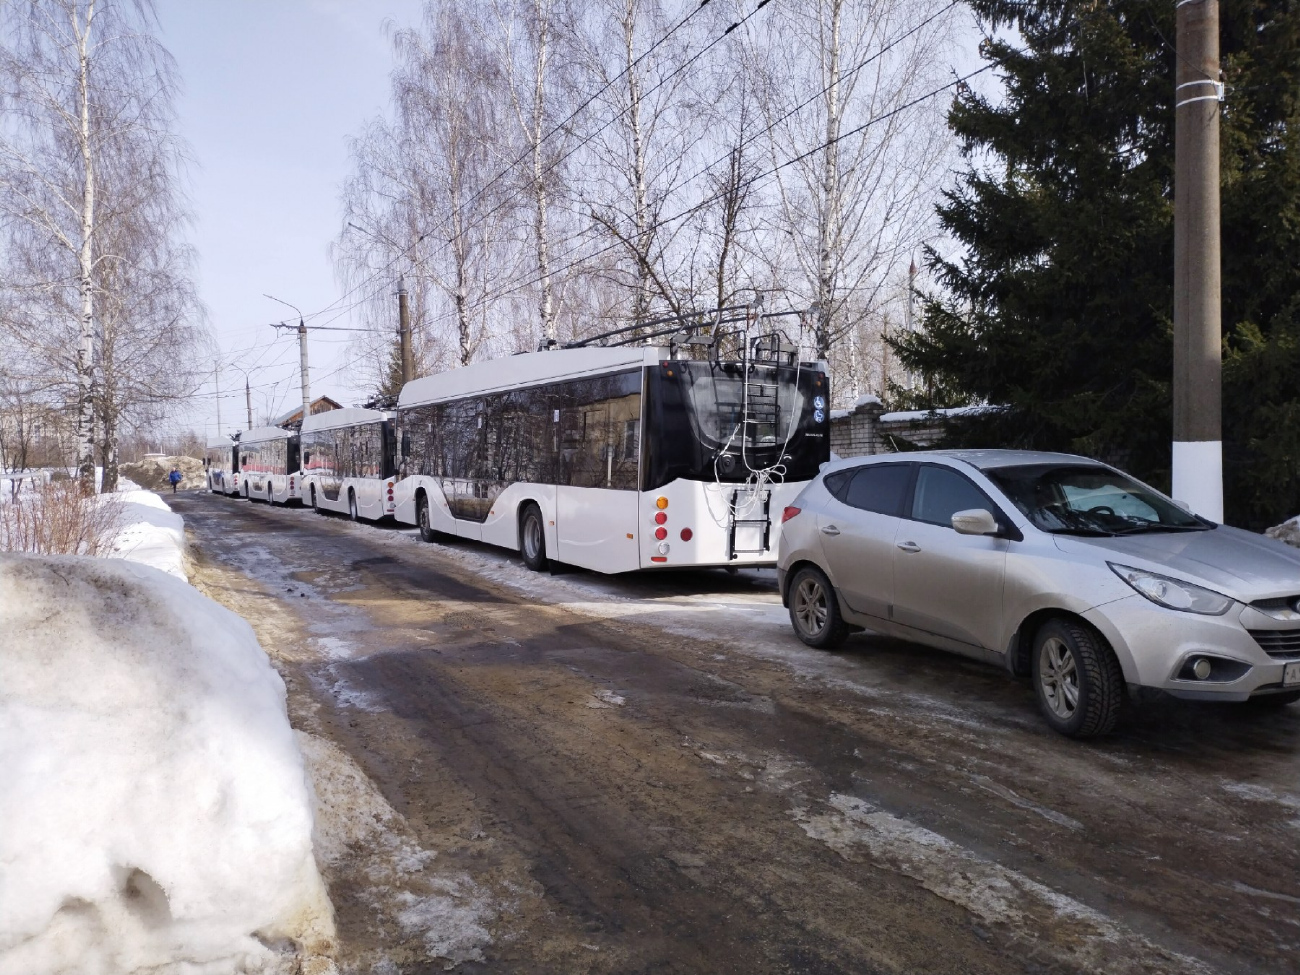 Kovrov — New trolleybus